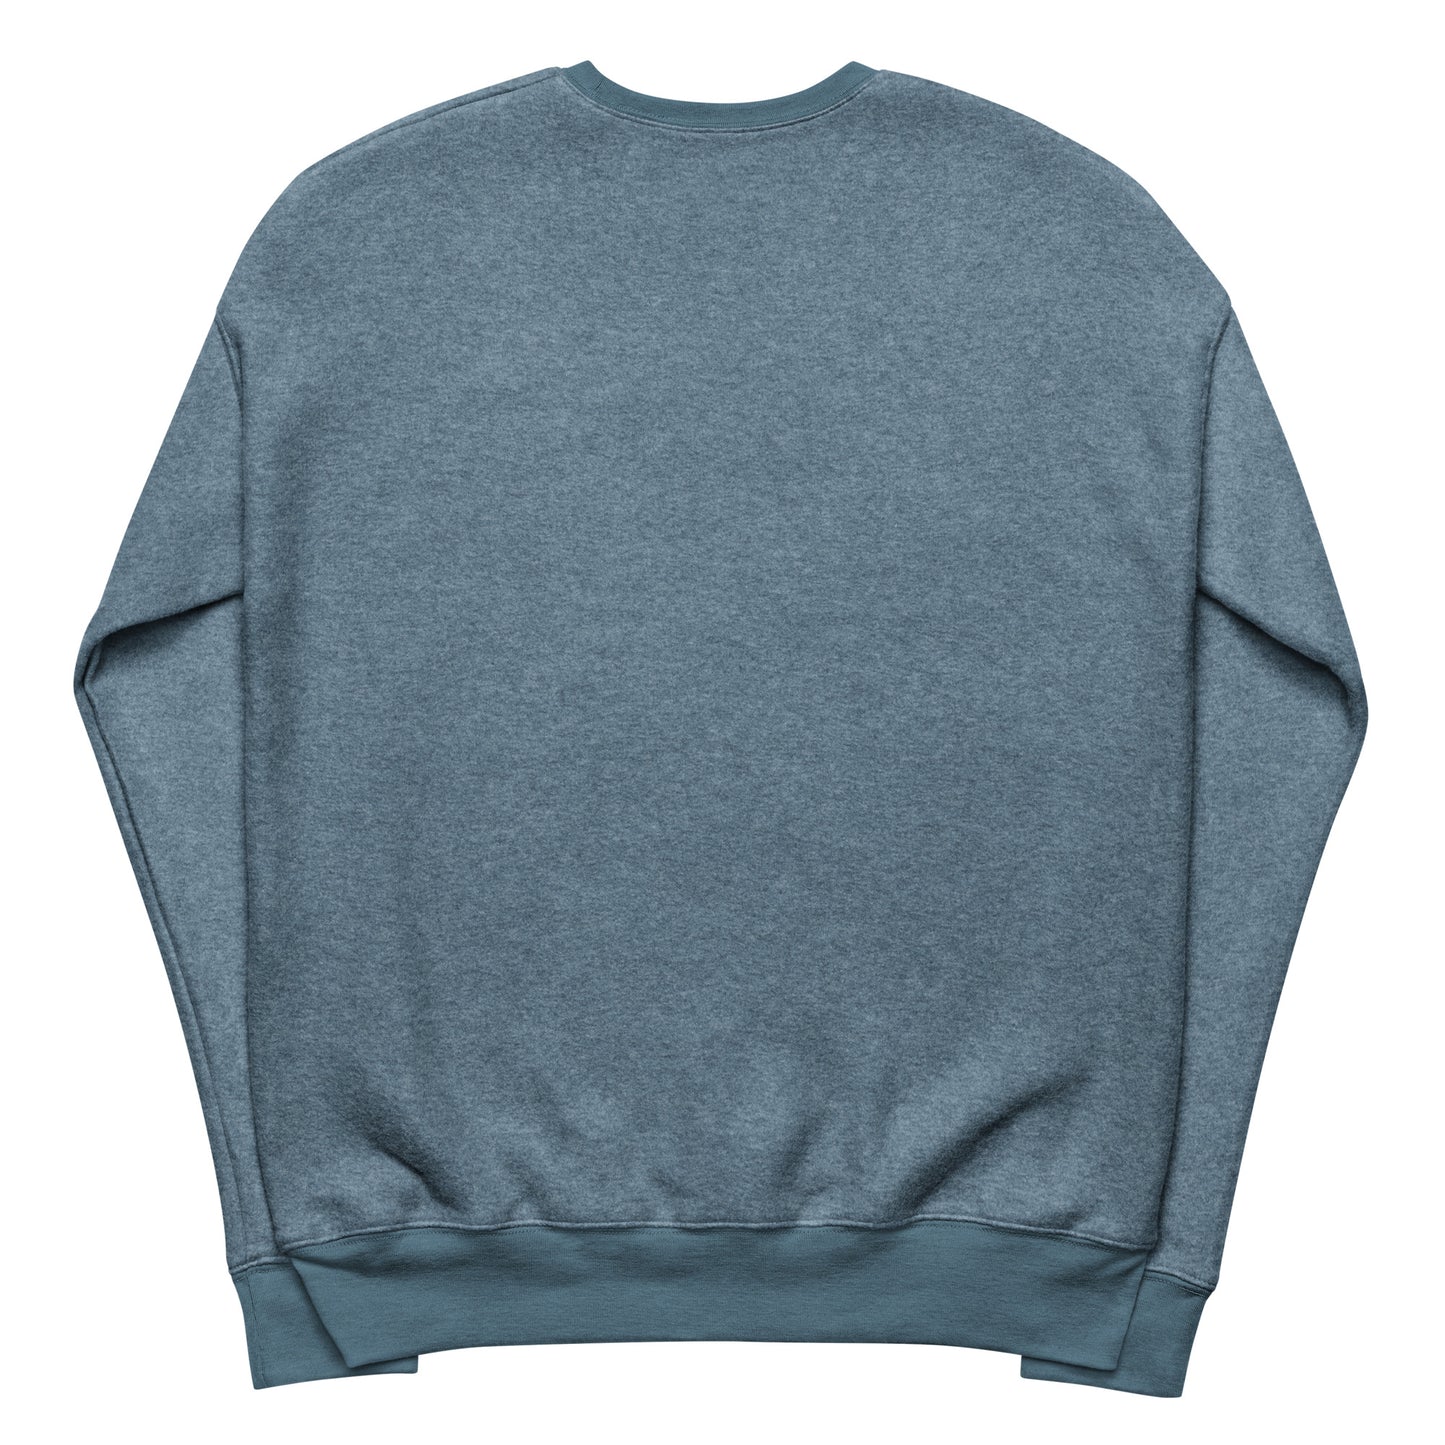 I got this Unisex sueded fleece sweatshirt